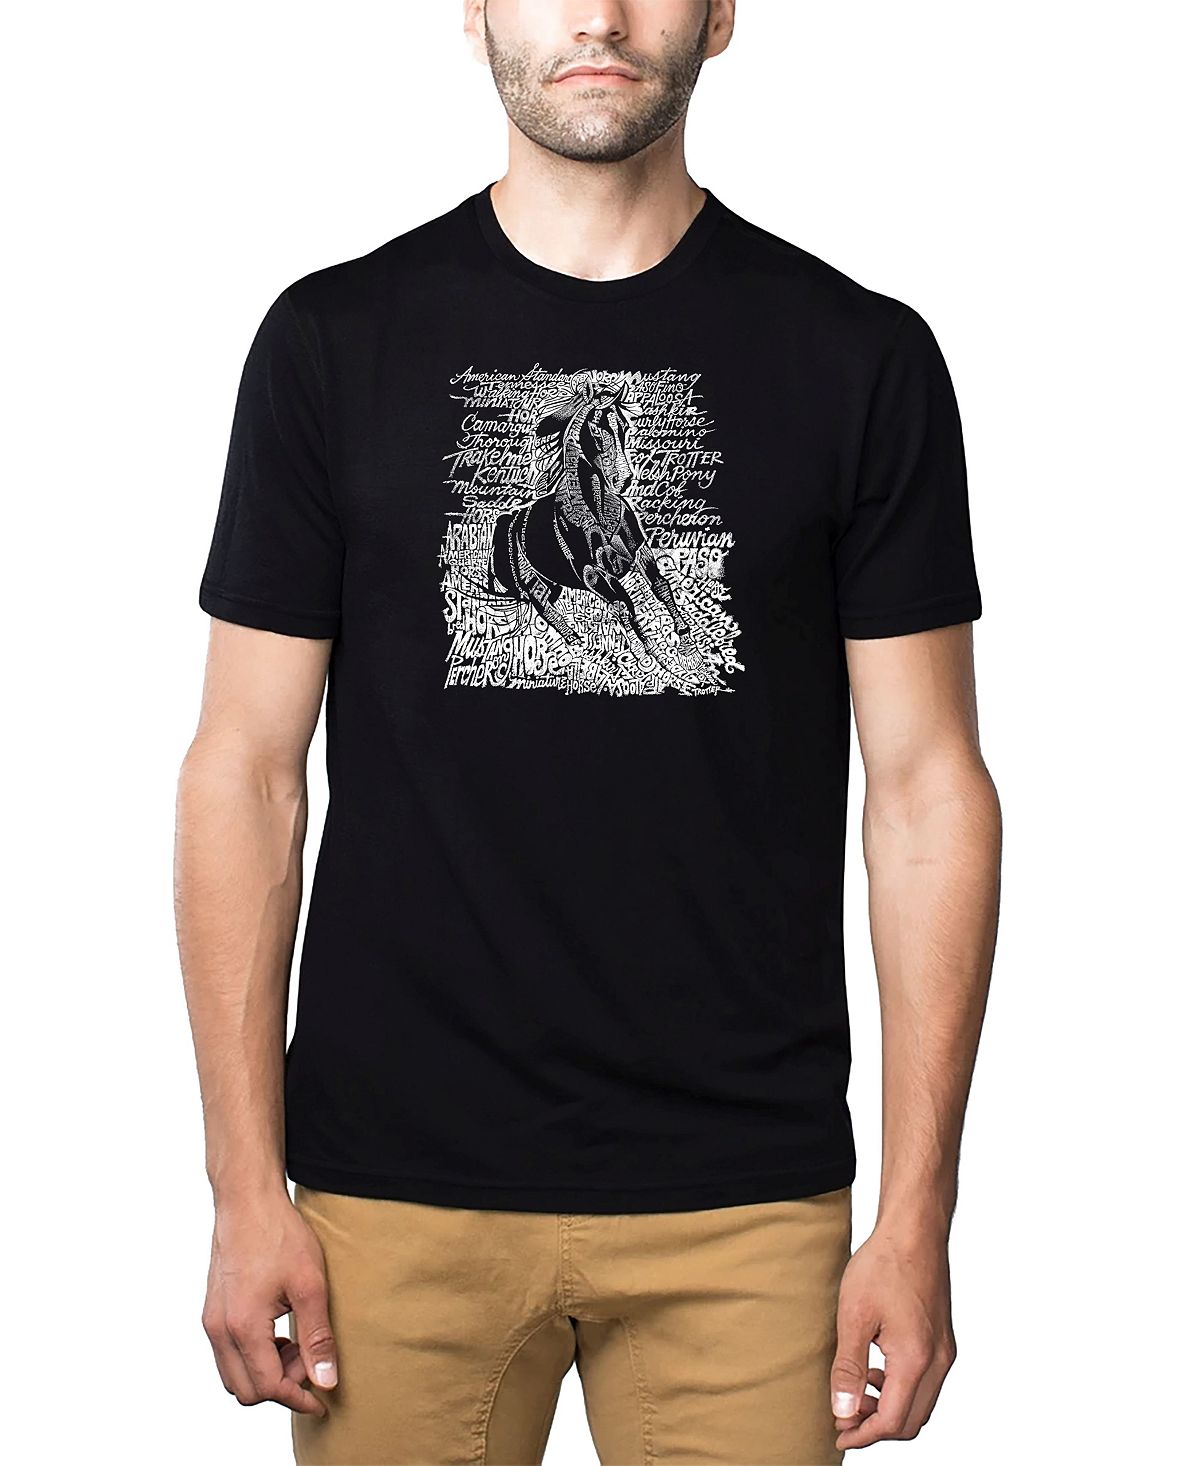 Мужская футболка premium word art - породы лошадей LA Pop Art, черный